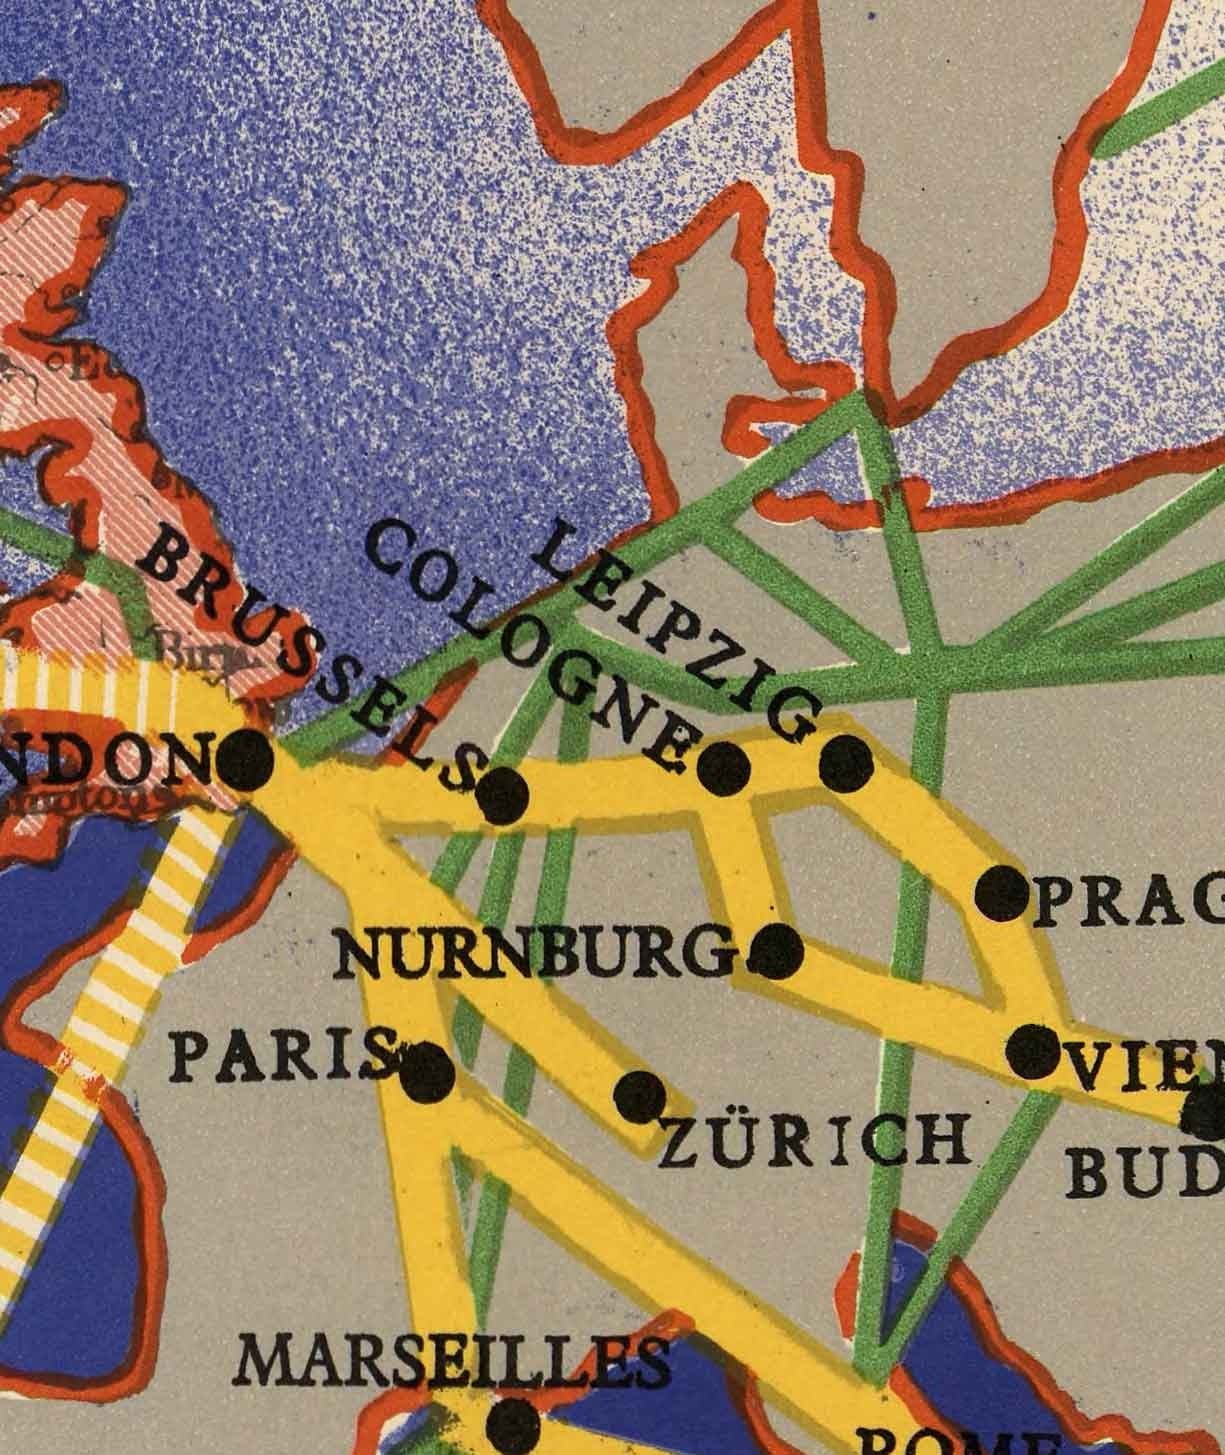 Imperial Airways World Map, 1937 - Ancienne carte de l'Empire britannique Bauhaus par Laszlo Moholy-Nagy - Routes aériennes long-courrier